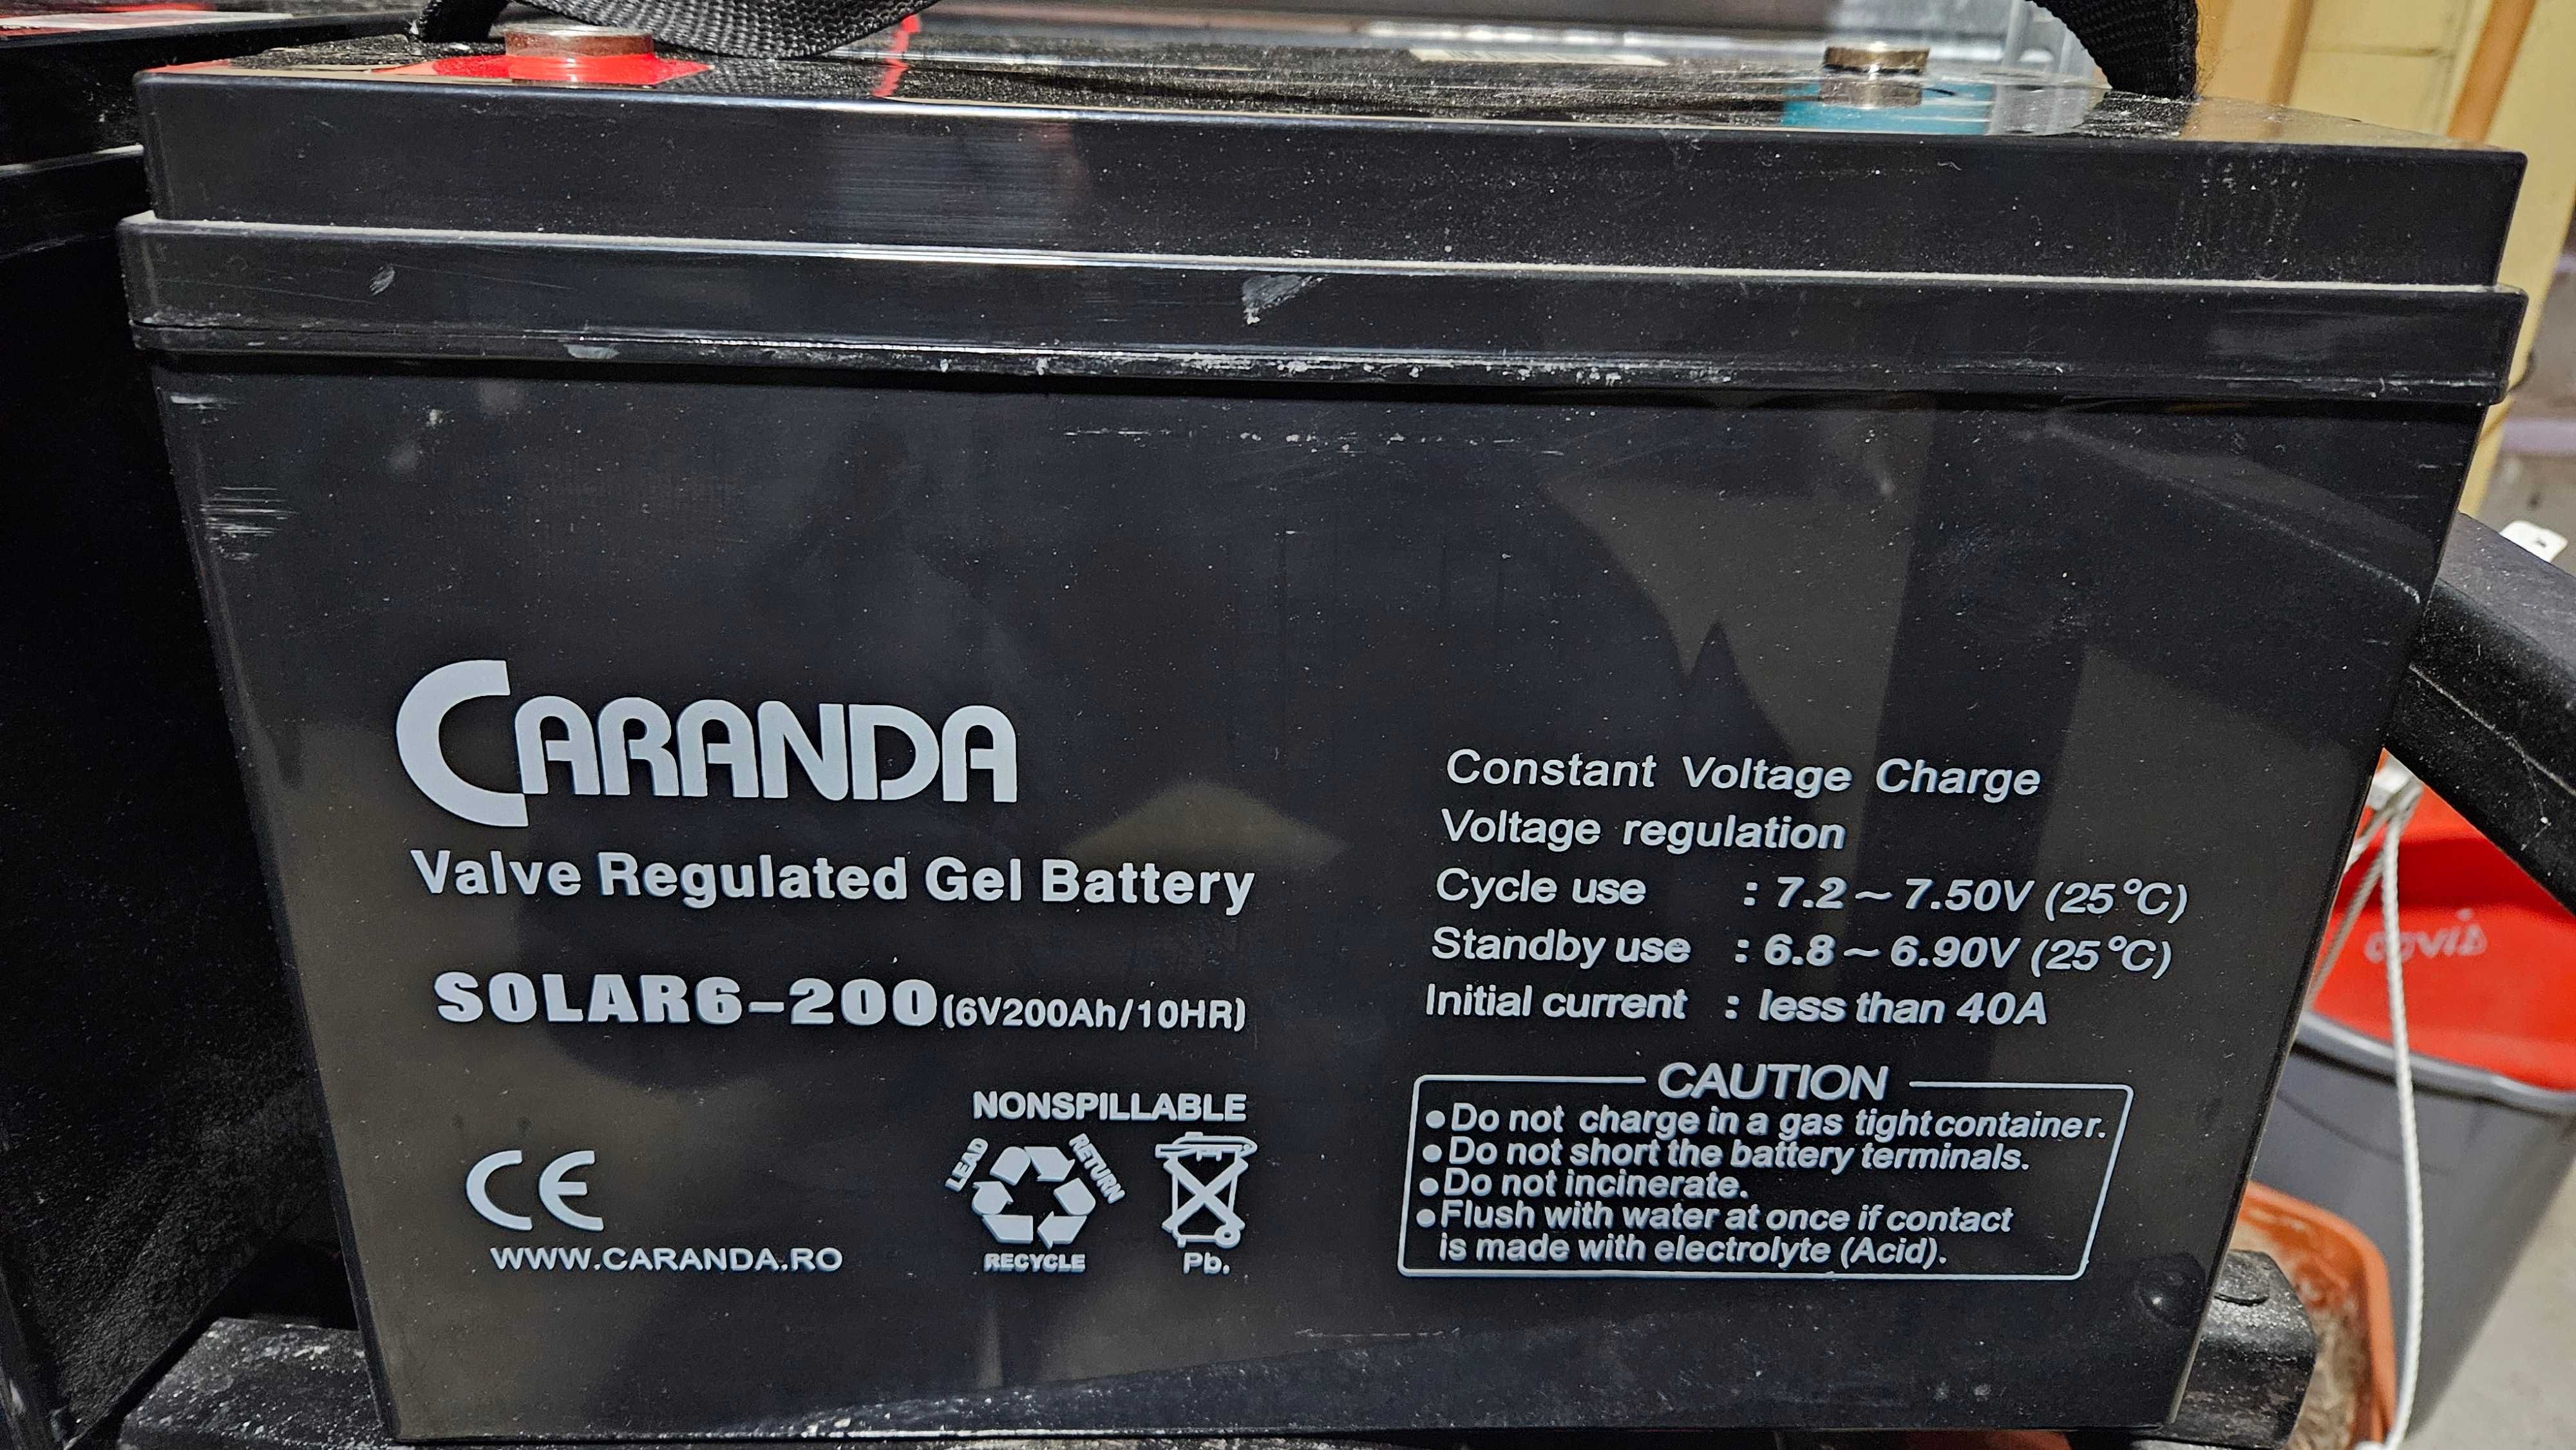 Vând baterie CARANDA - GEL BATTERY SOLAR 6-200